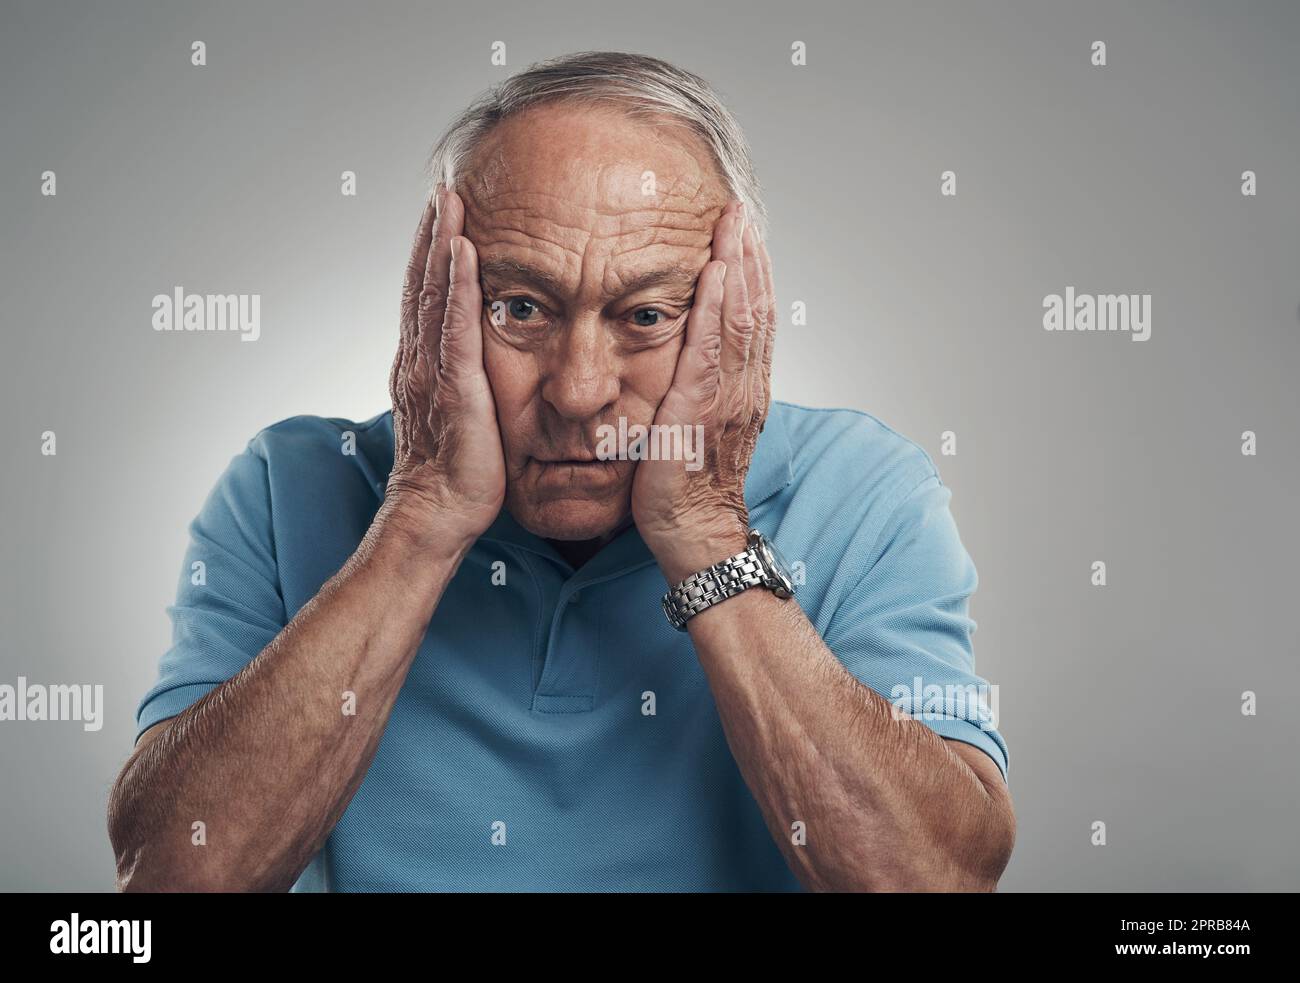 Dieser Tag war so herausfordernd: Ein älterer Mann klatschte sich in einem Studio vor grauem Hintergrund die Hände ins Gesicht. Stockfoto